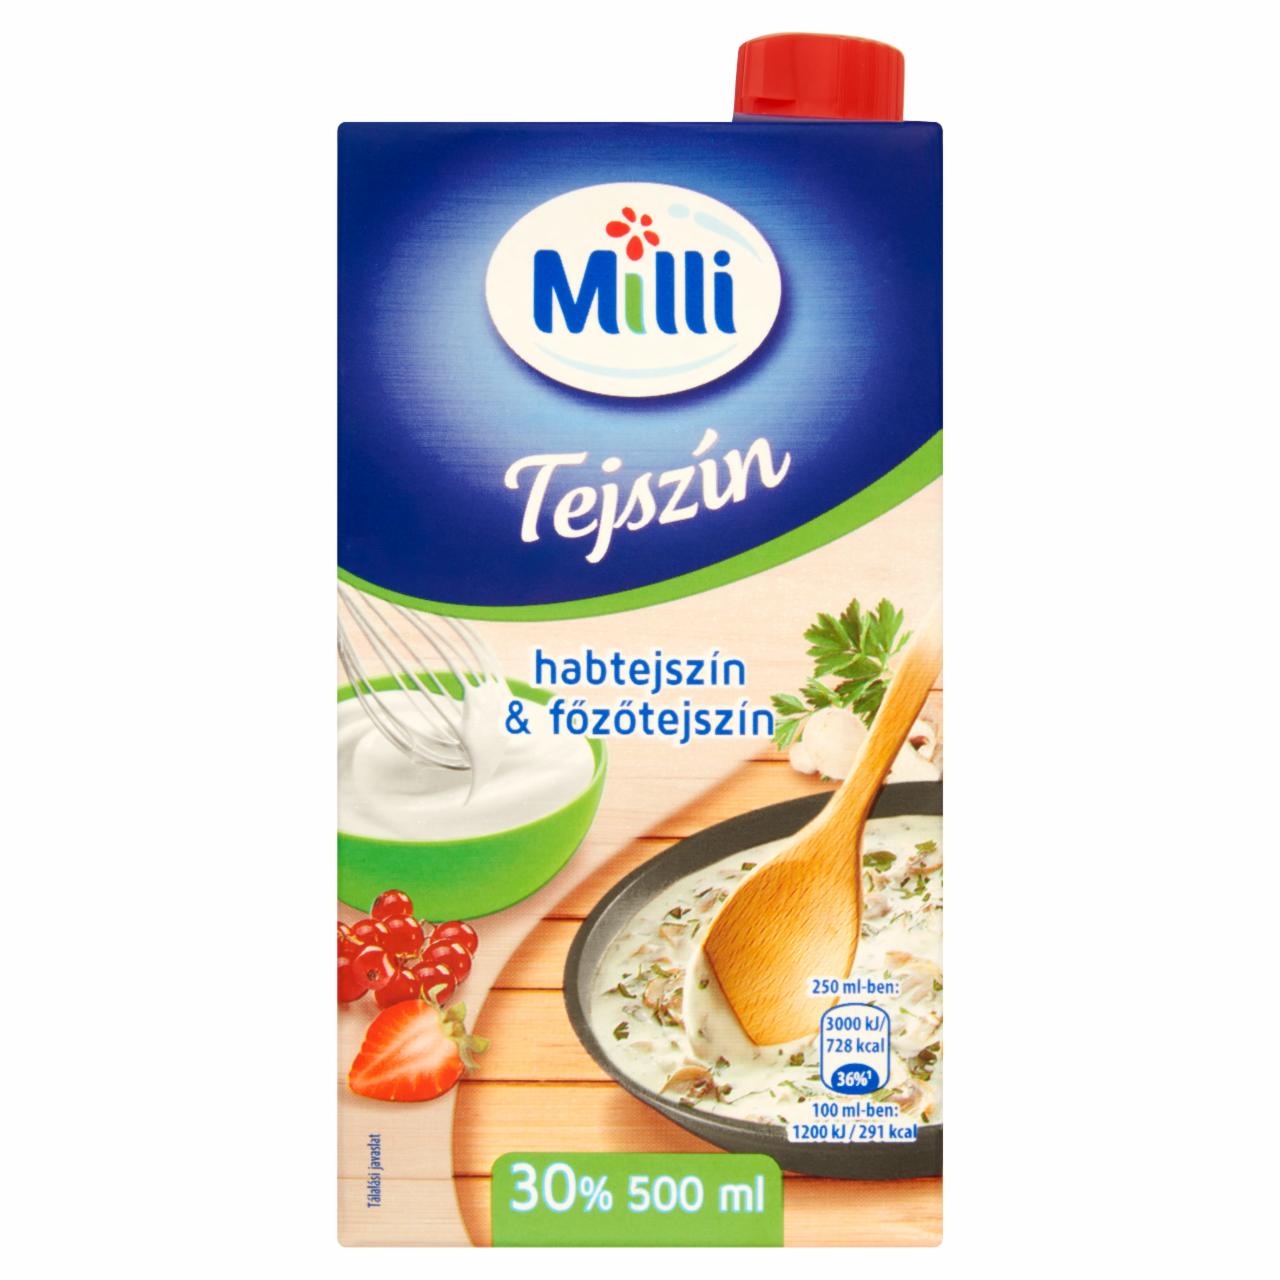 Képek - Milli UHT habtejszín & főzőtejszín 30% 500 ml